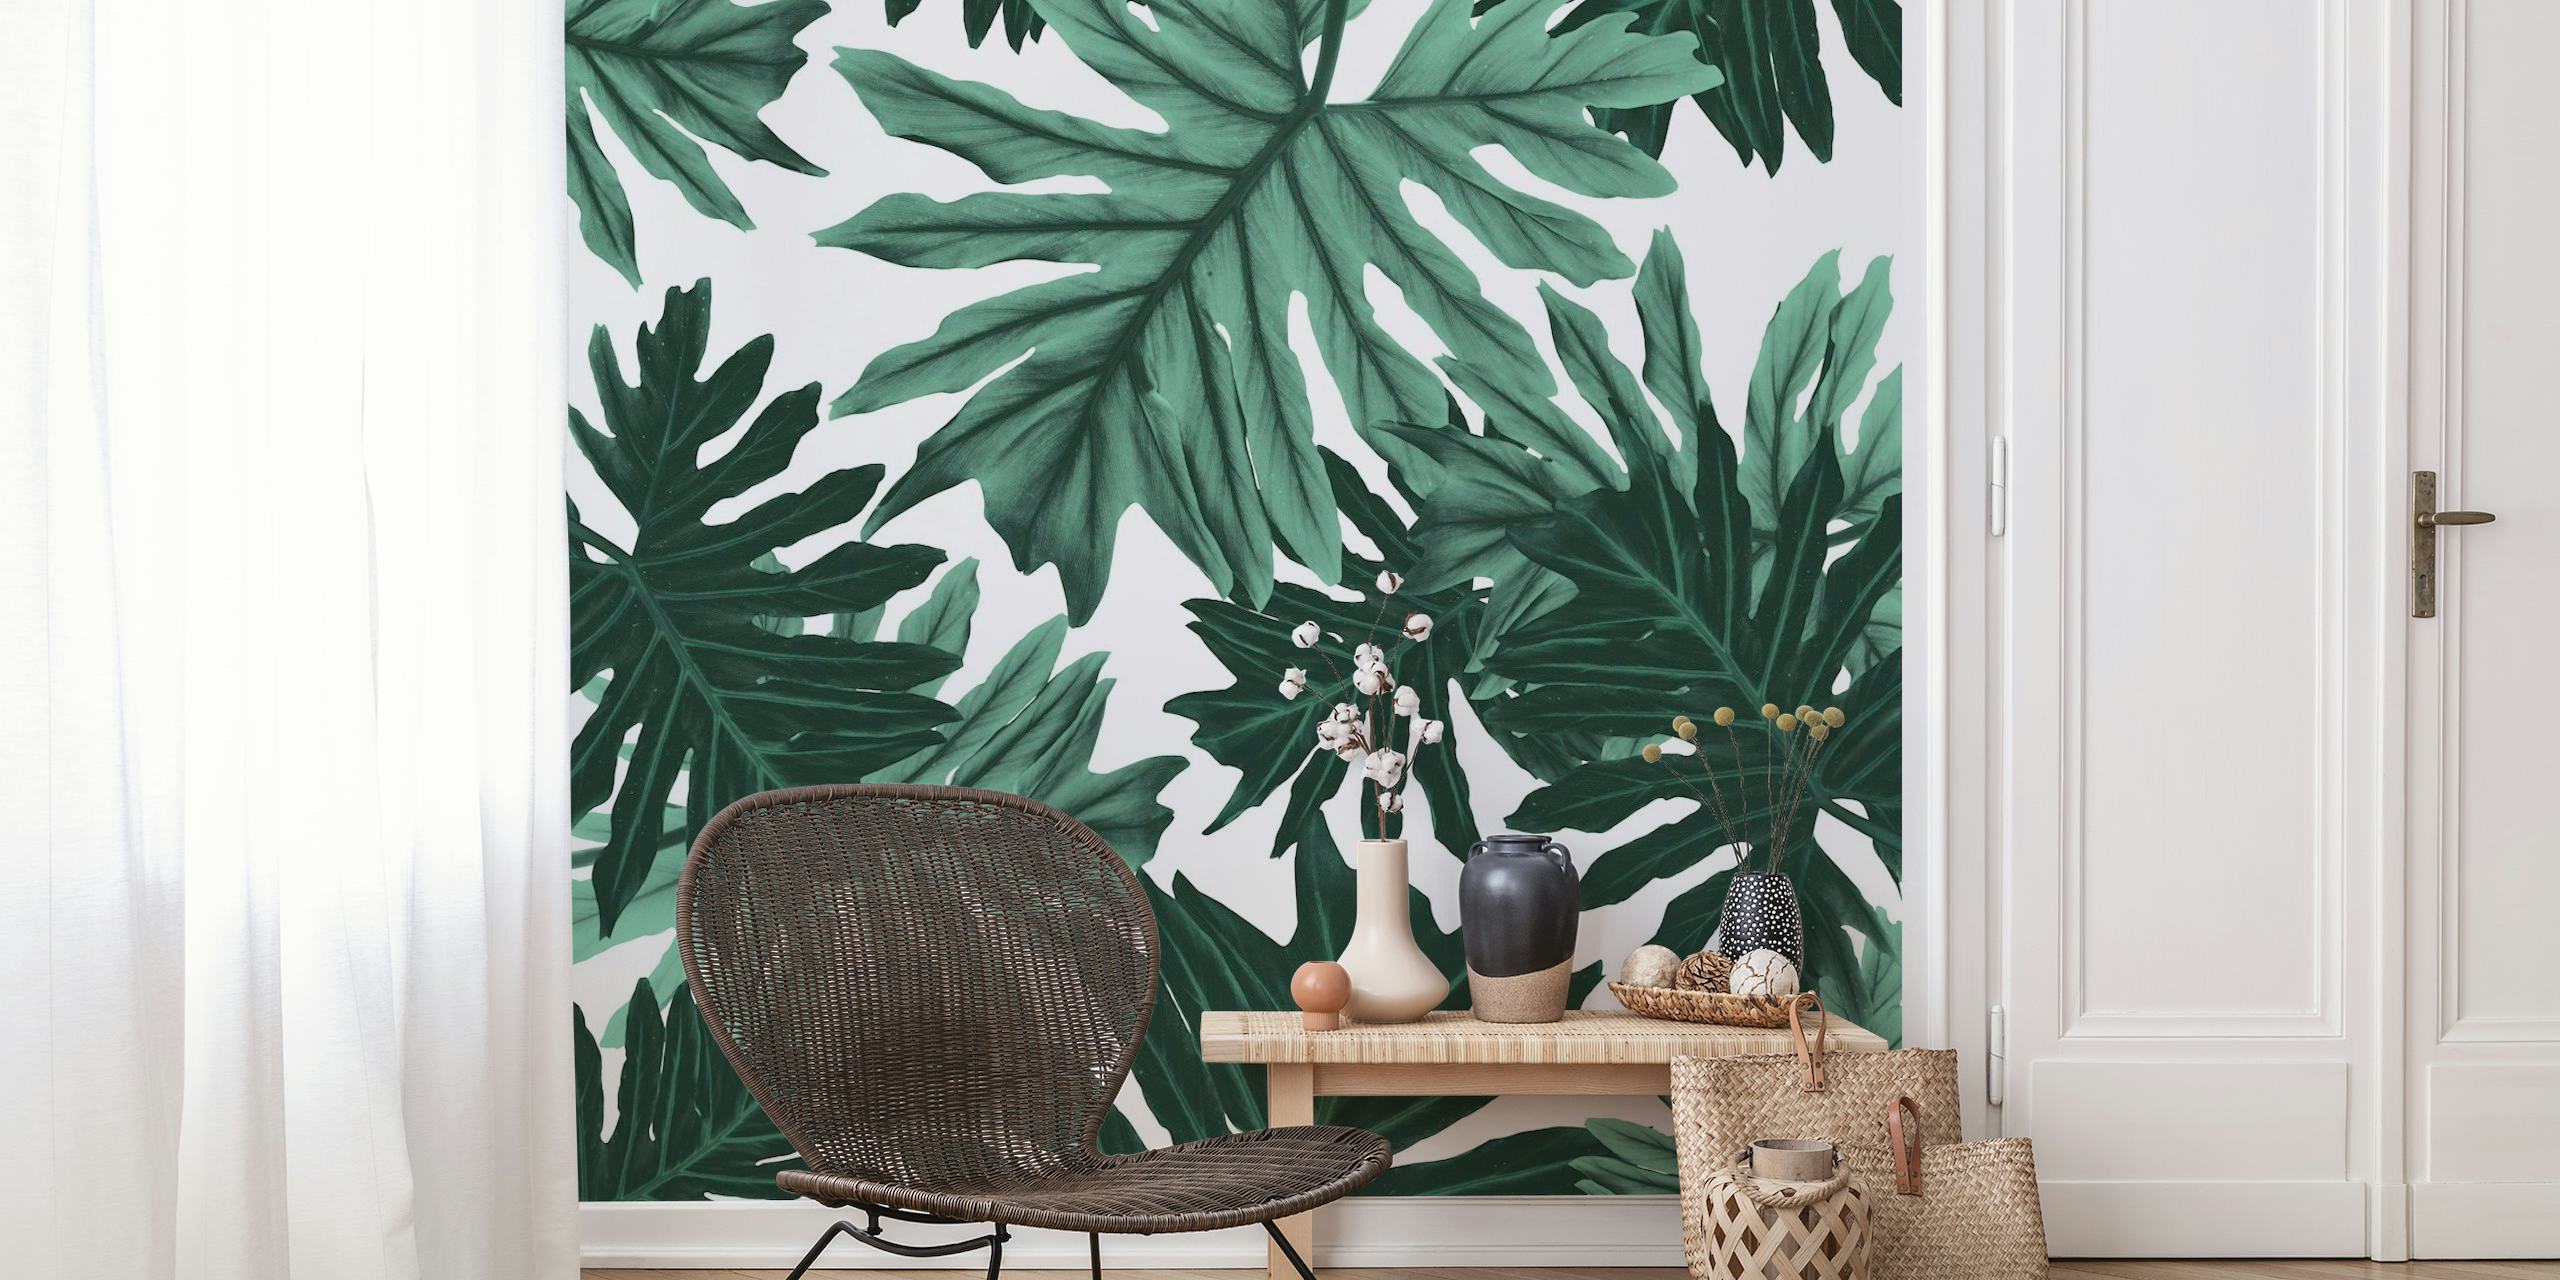 Wandbild mit tropischen Dschungelblättern in Grüntönen, Design Philo Hope Tropical Jungle 6 für ein von der Natur inspiriertes Dekor.